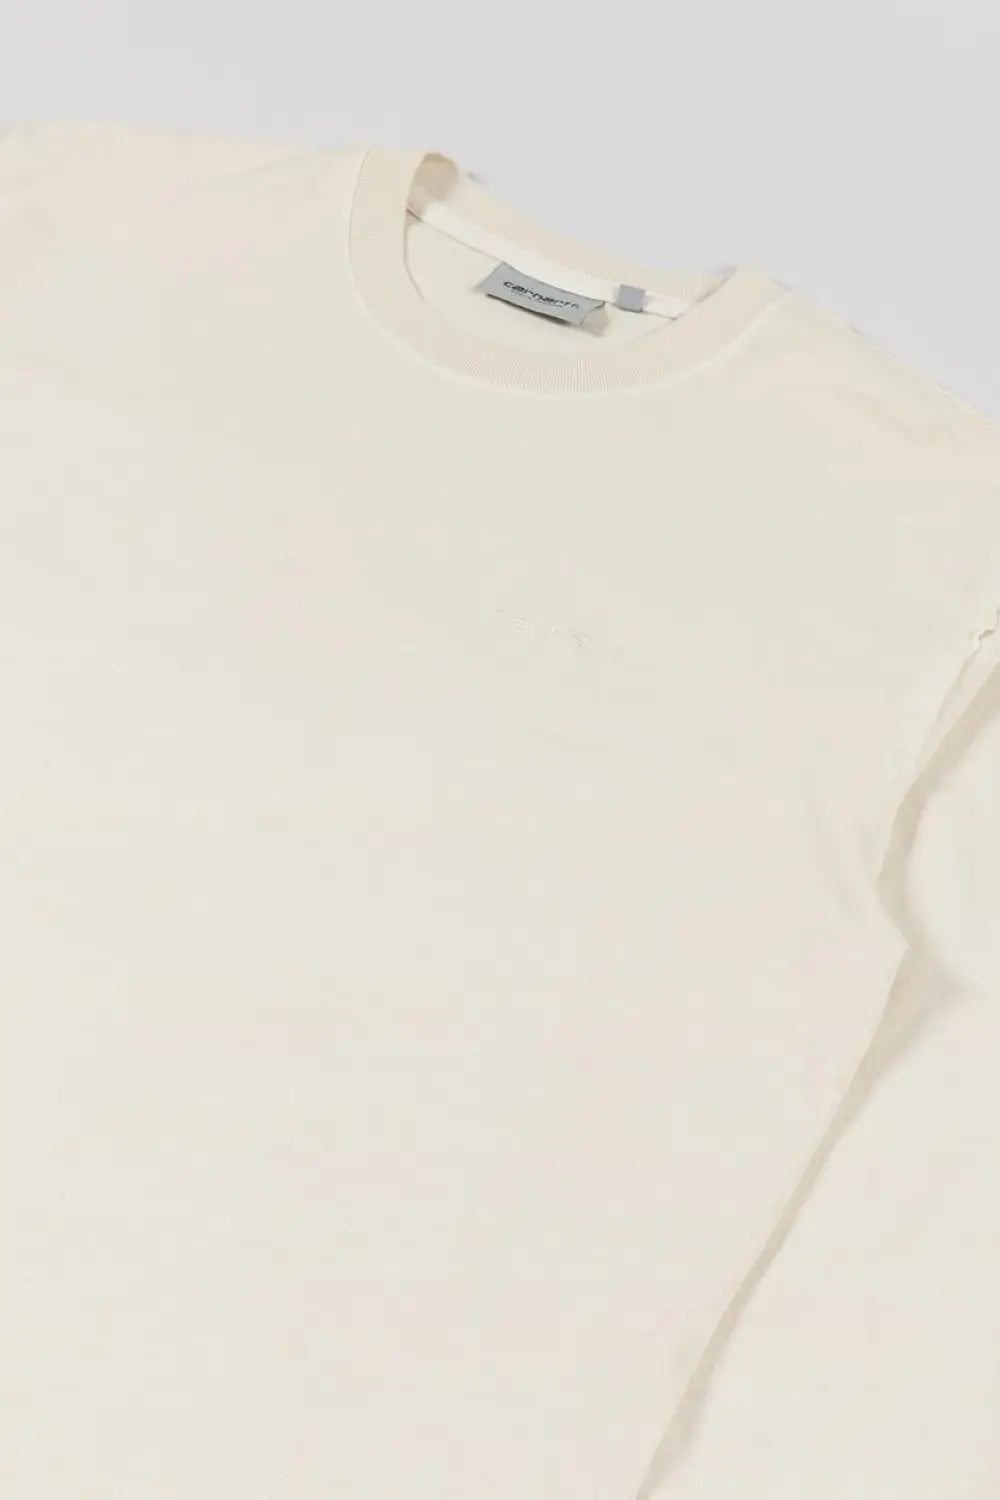 Carhartt WIP Marfa Long Sleeve T-Shirt Top